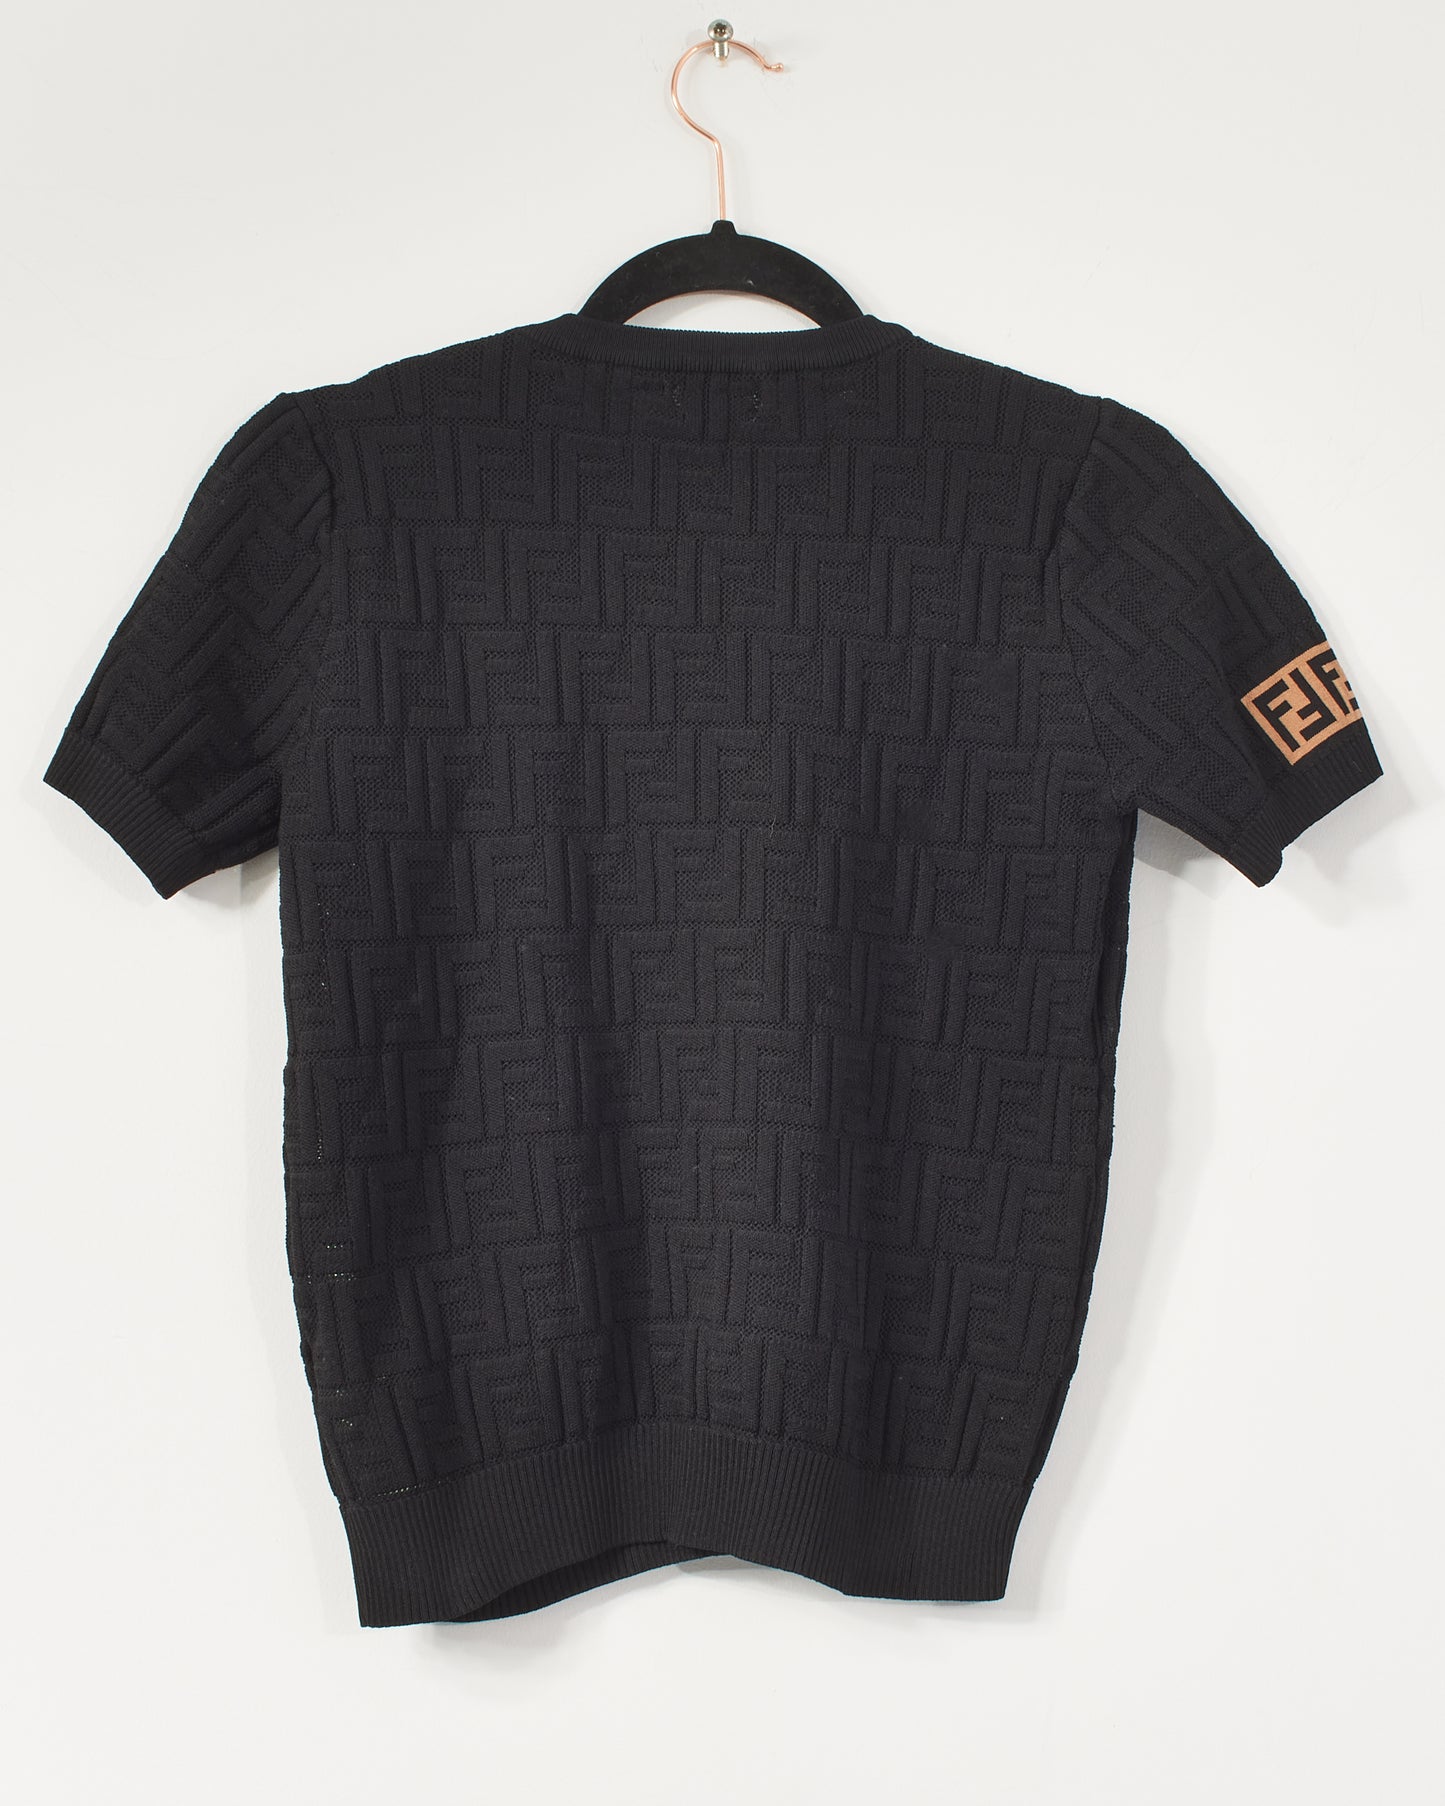 Fendi Black Jacquard Logo Short Sleeve Top - L